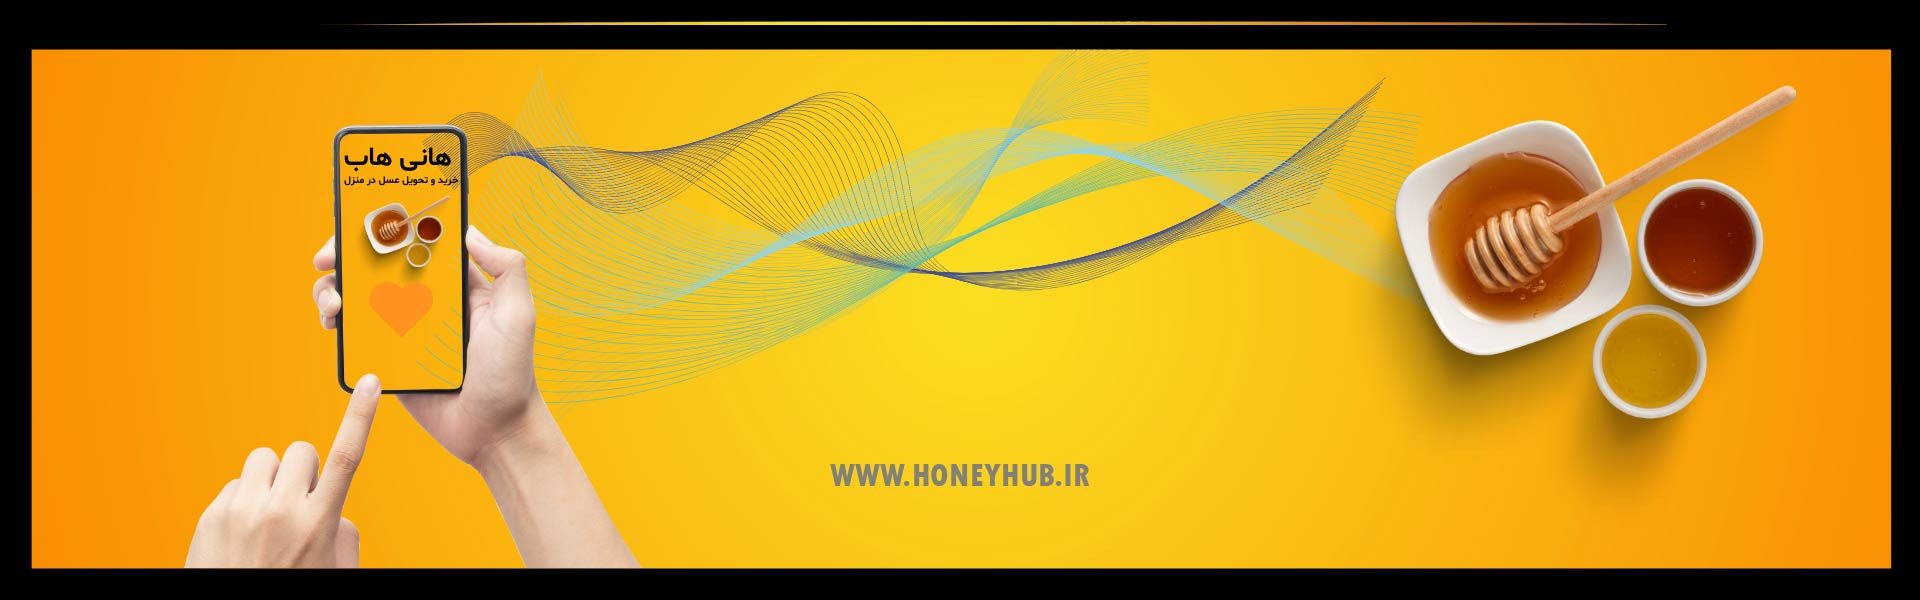 HoneyHub The Gateway to Iranian Honey